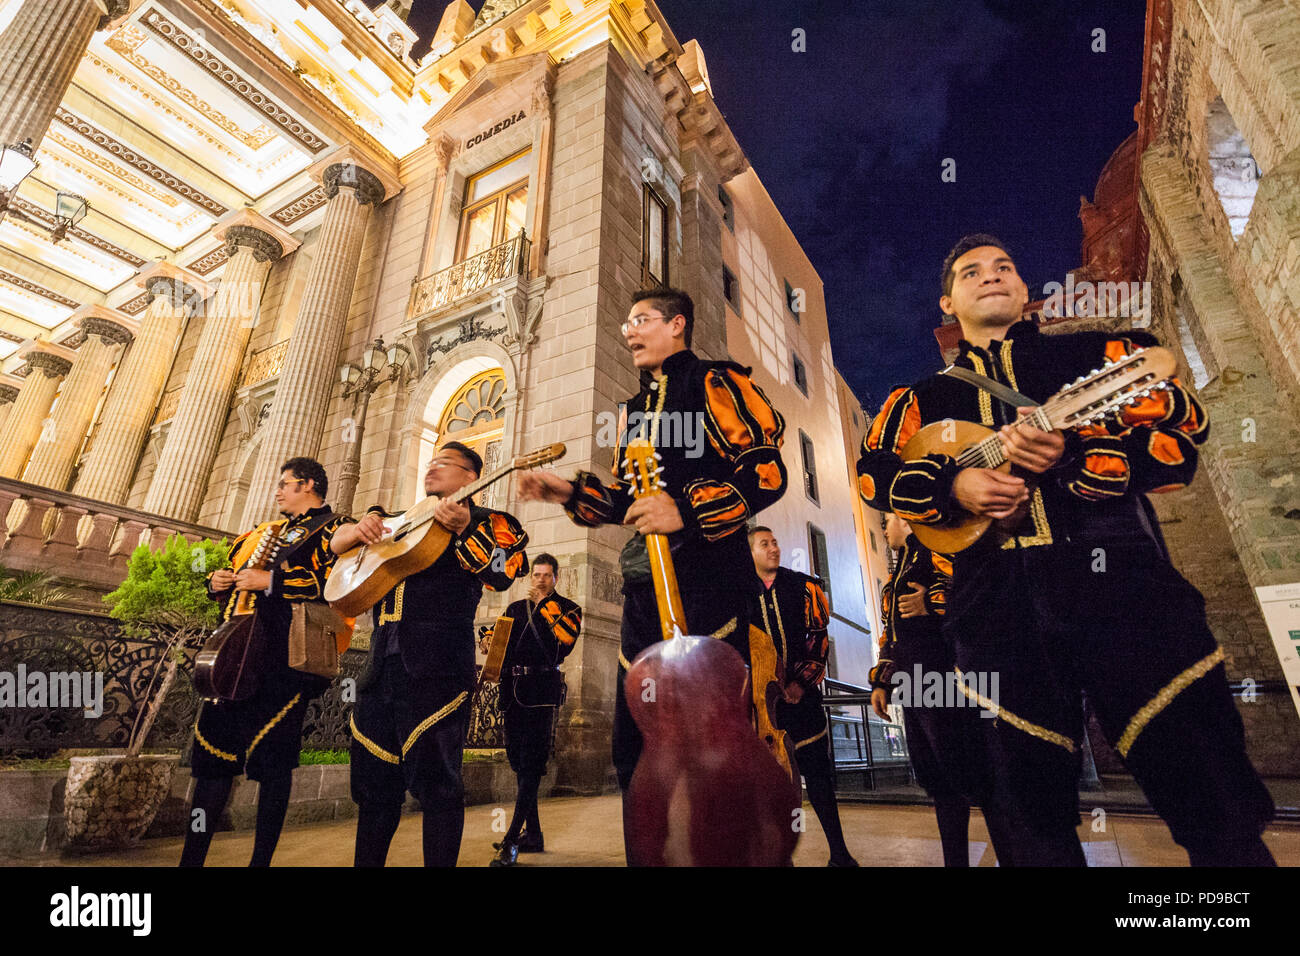 Troubadours de divertir une foule de touristes à Guanajuato, au Mexique. Banque D'Images